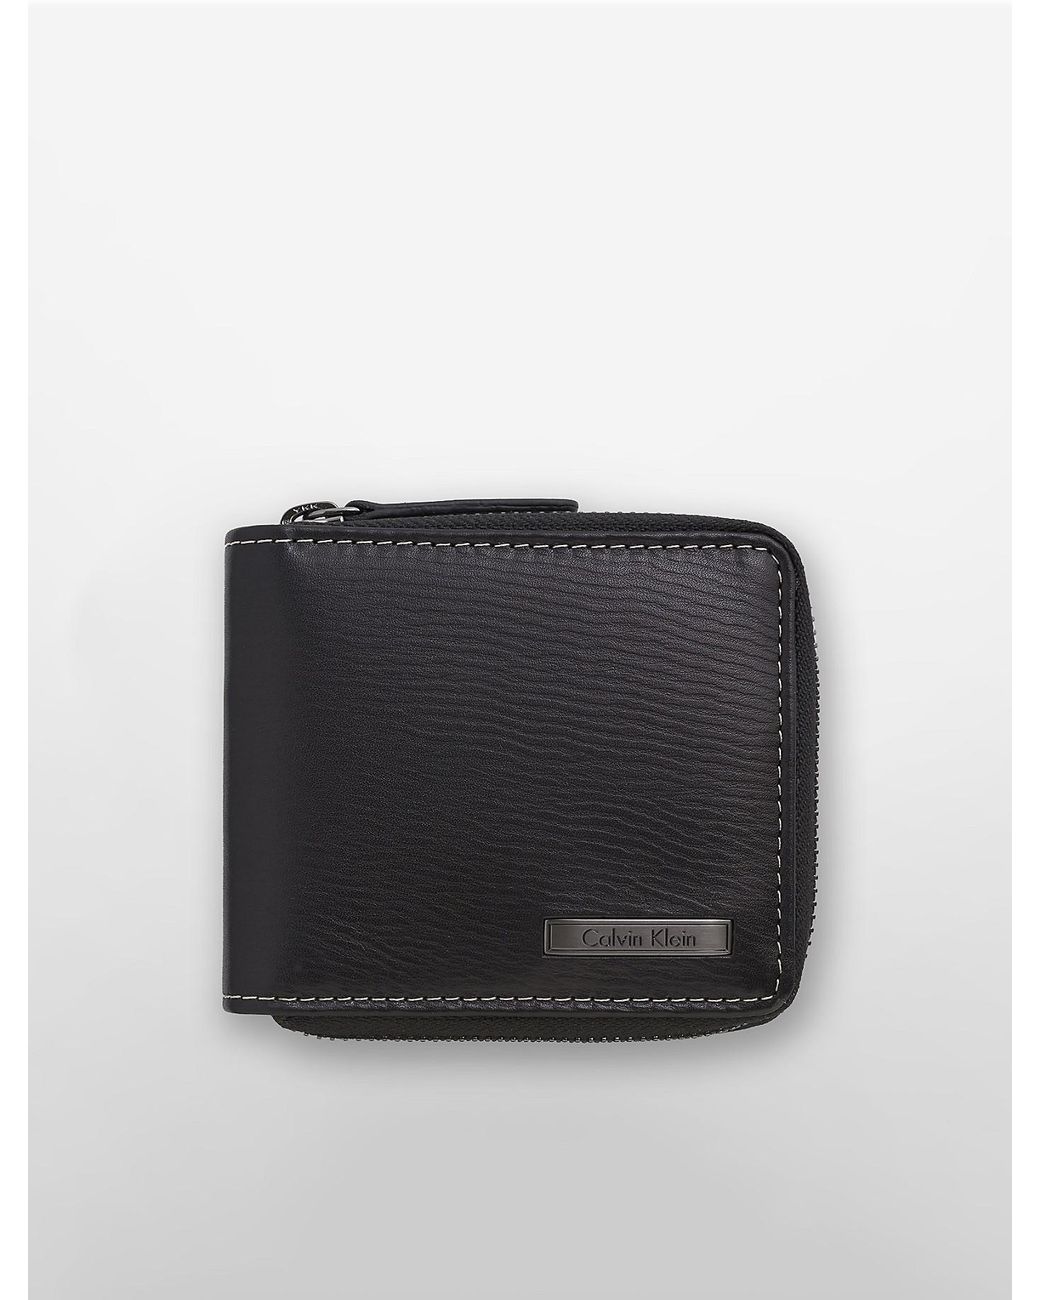 Total 33+ imagen calvin klein men’s wallet with zipper